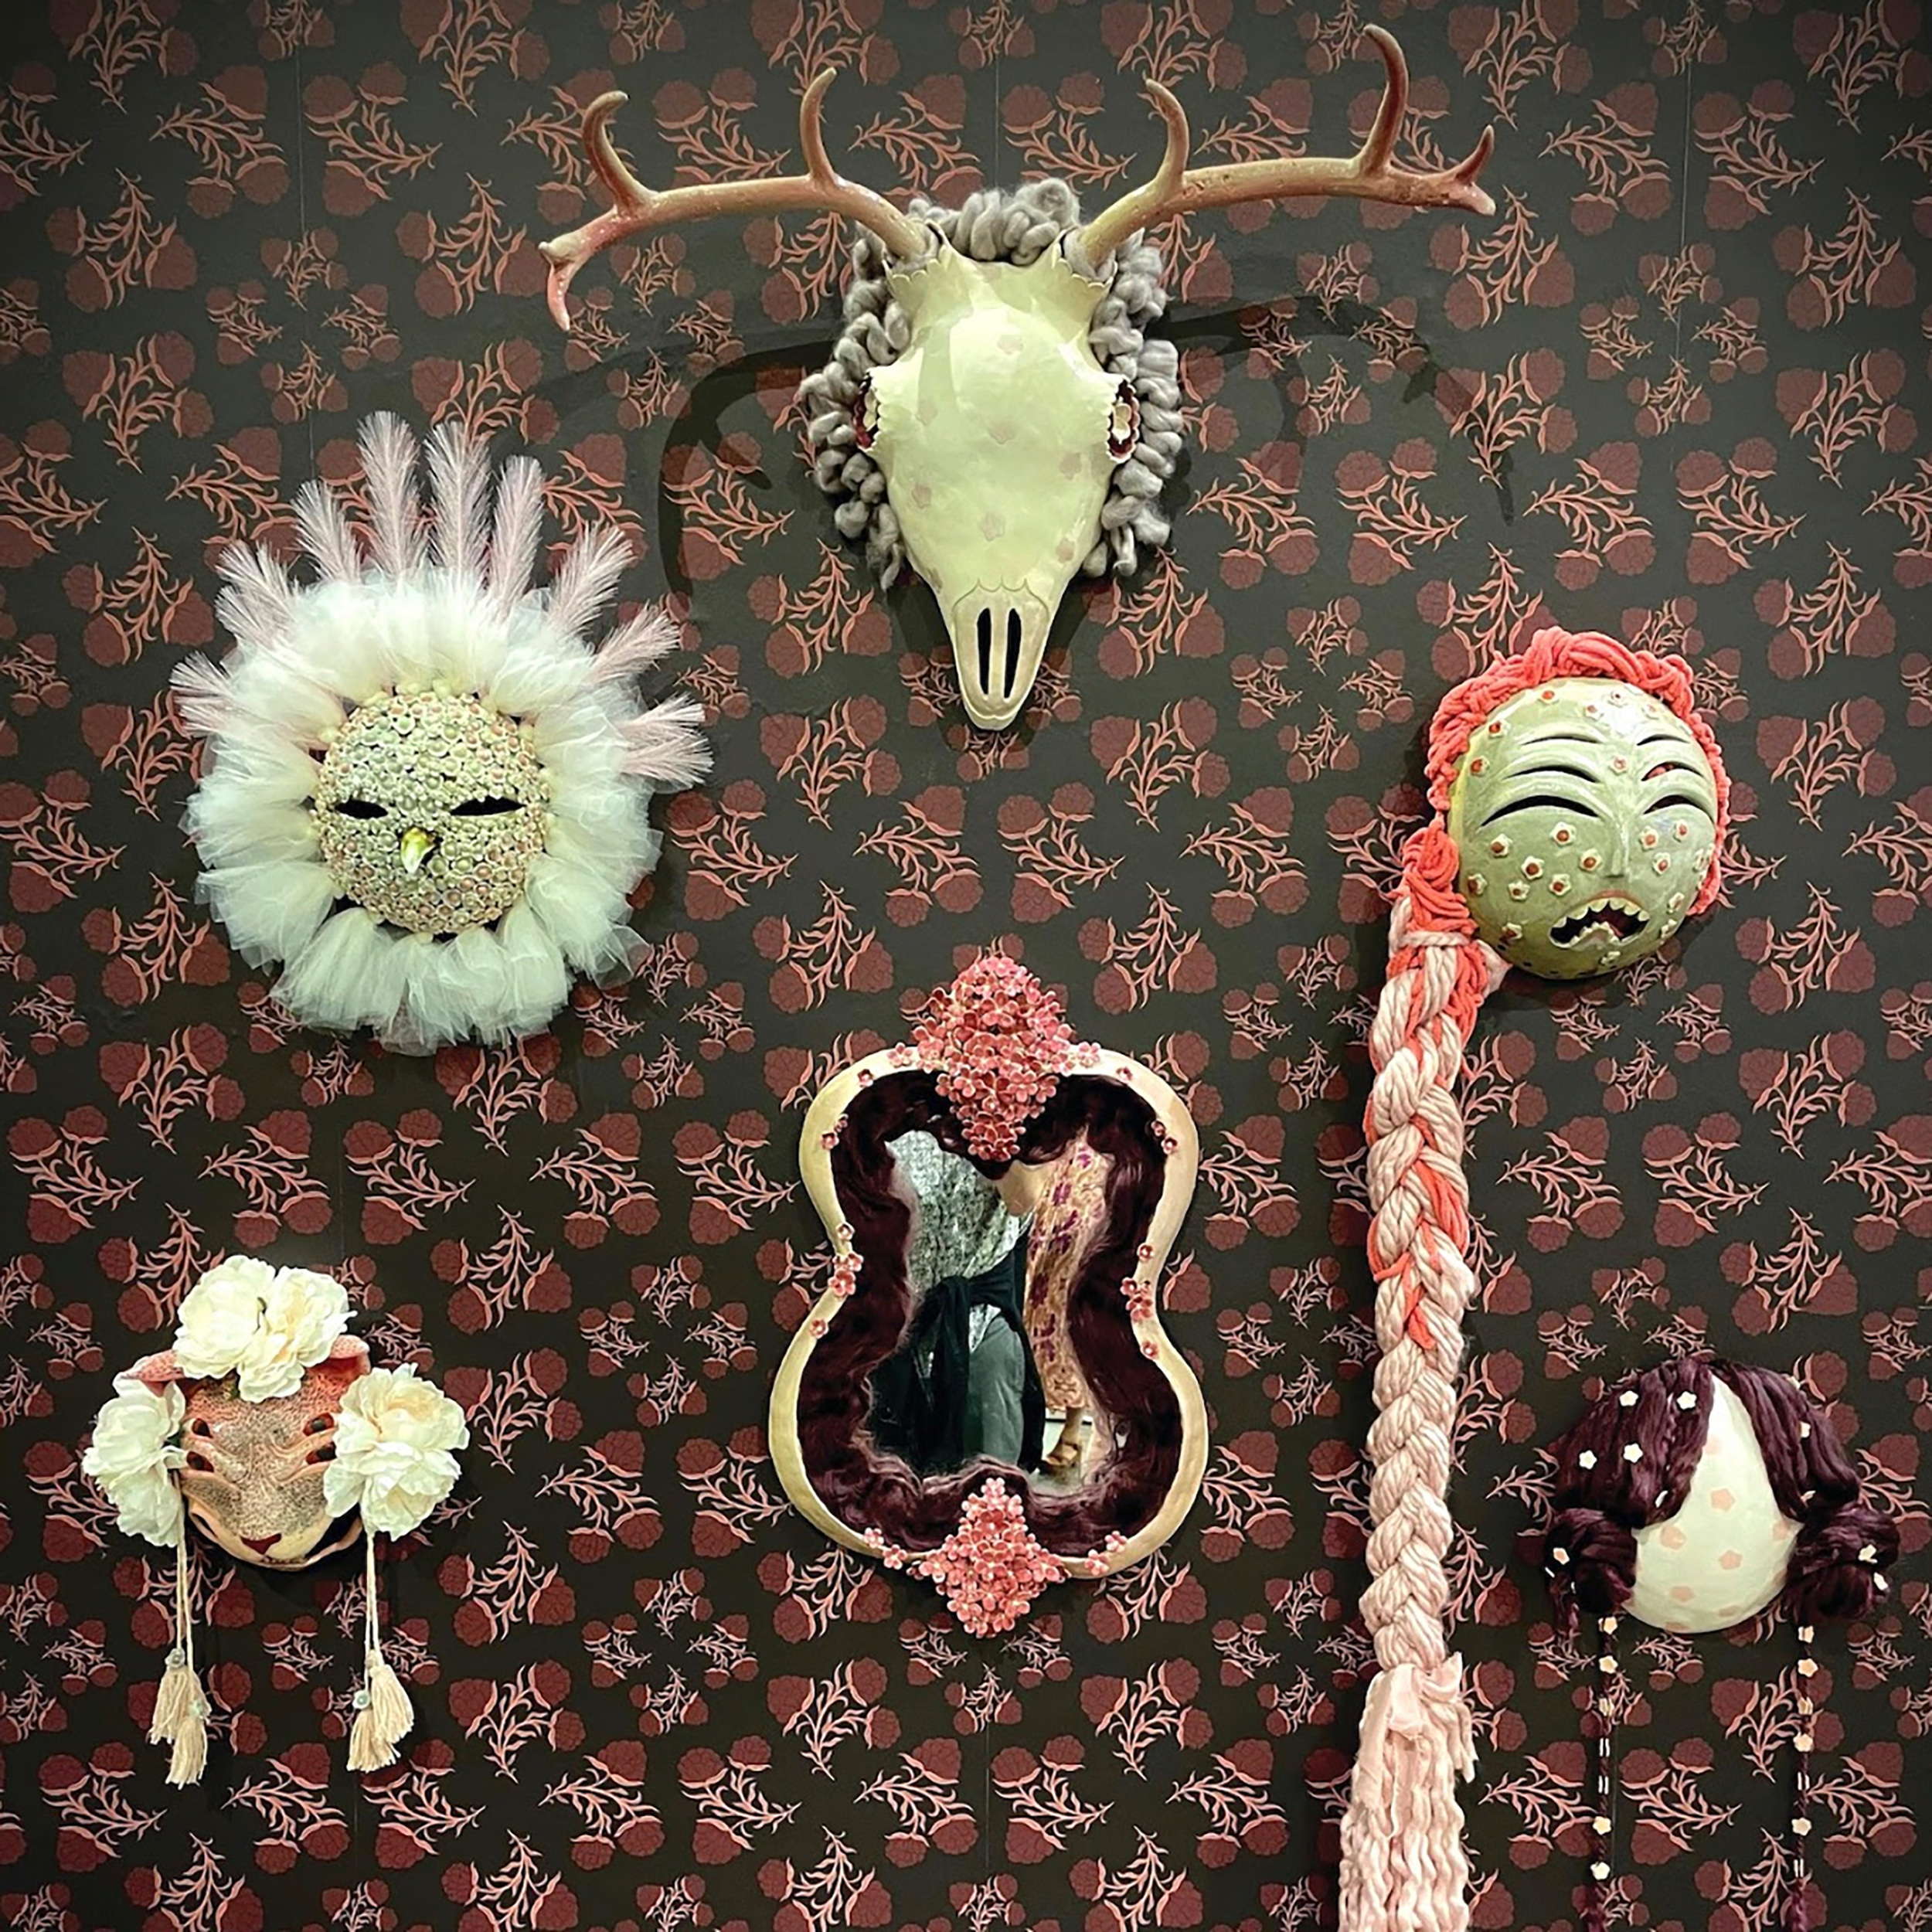 mythological masks by Kalee Calhoun